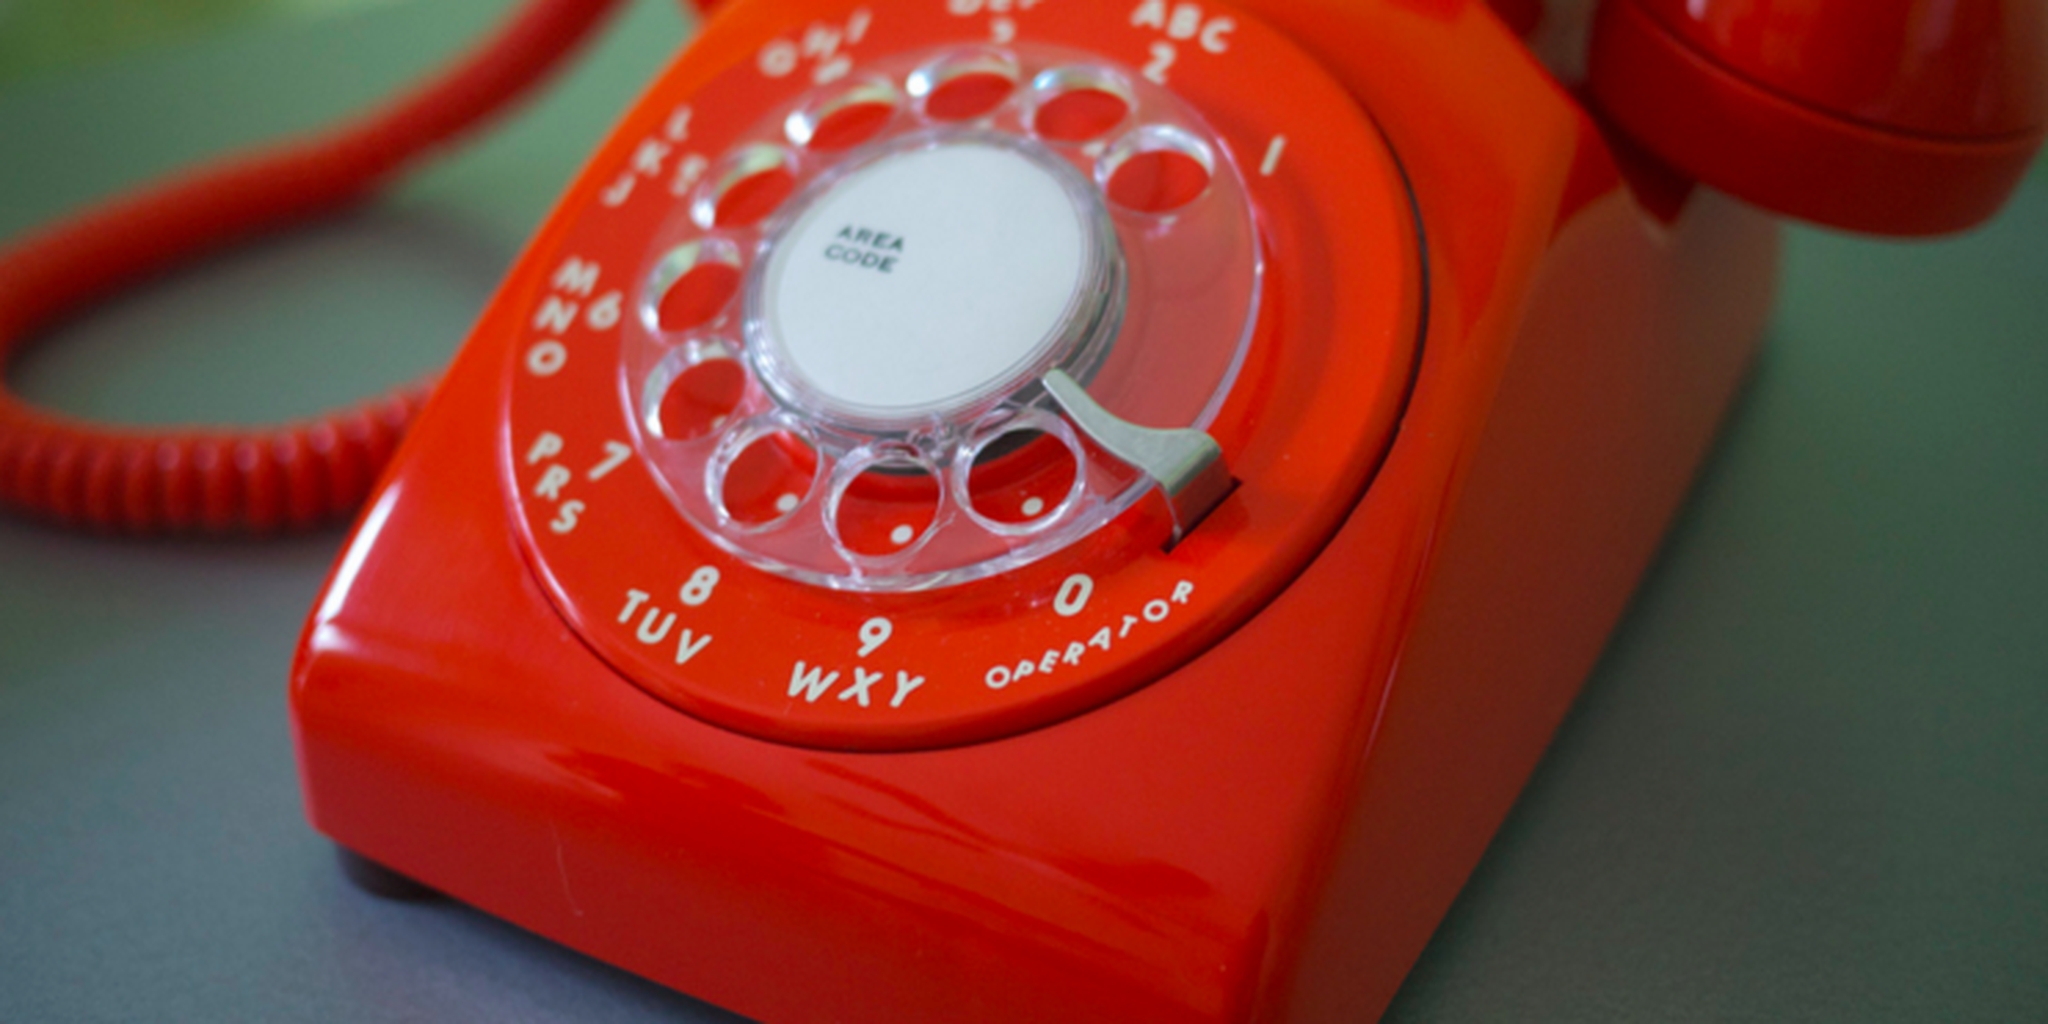 british phone numbers to prank call